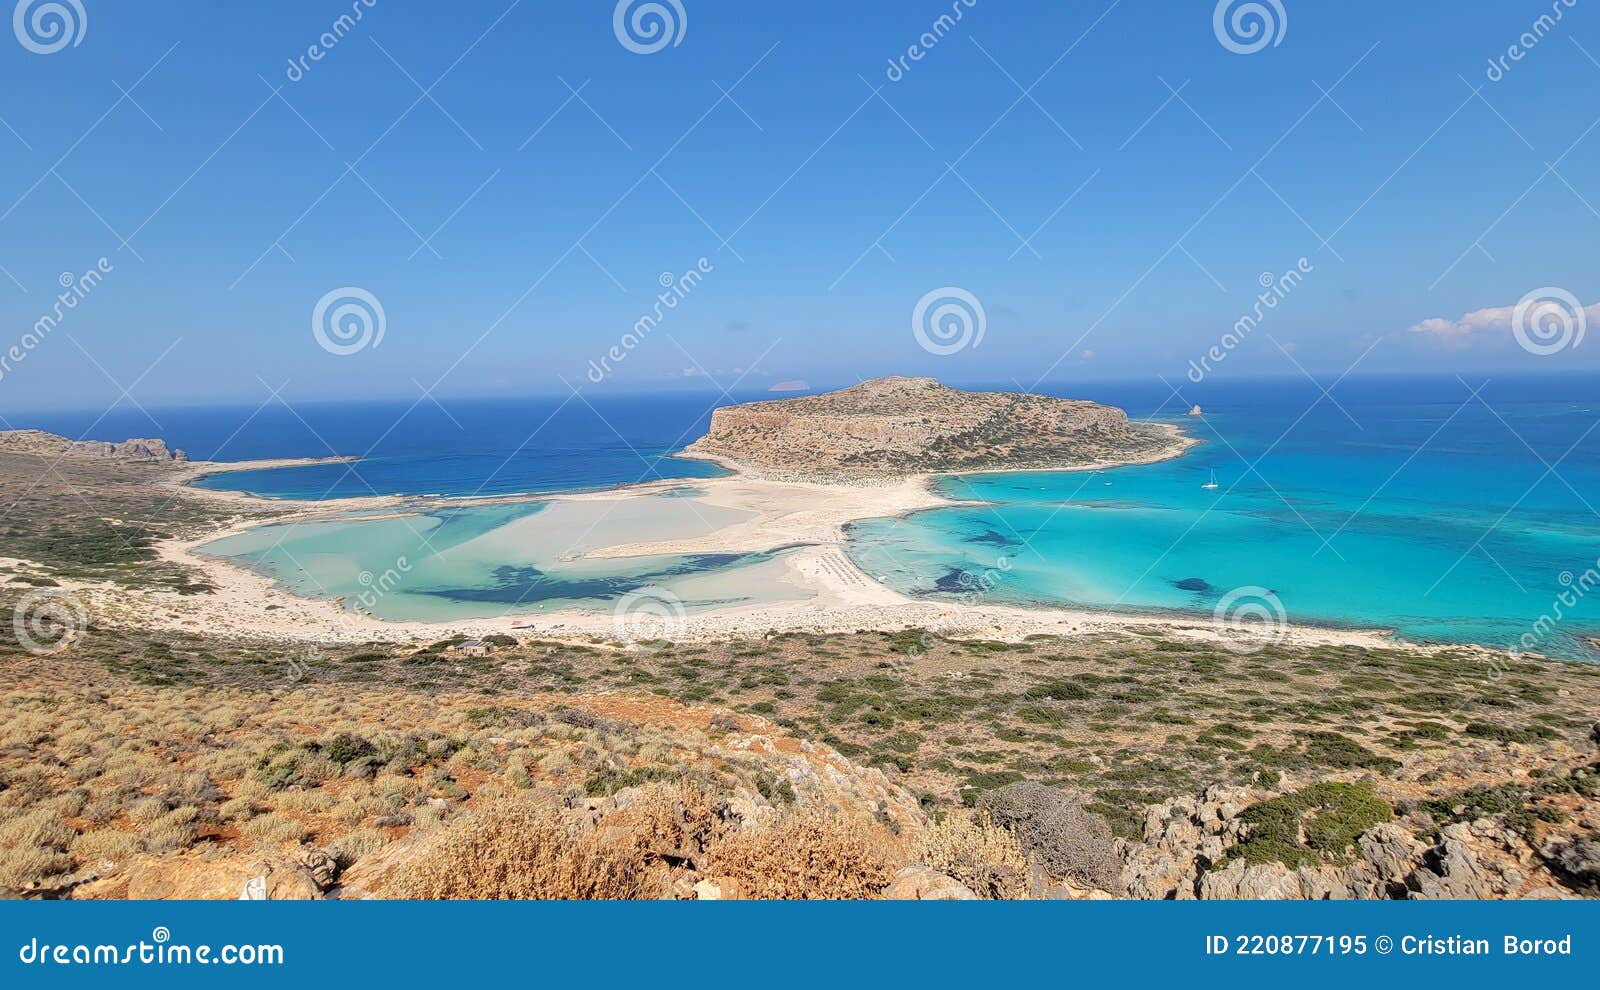 balos beach, creta island, greece